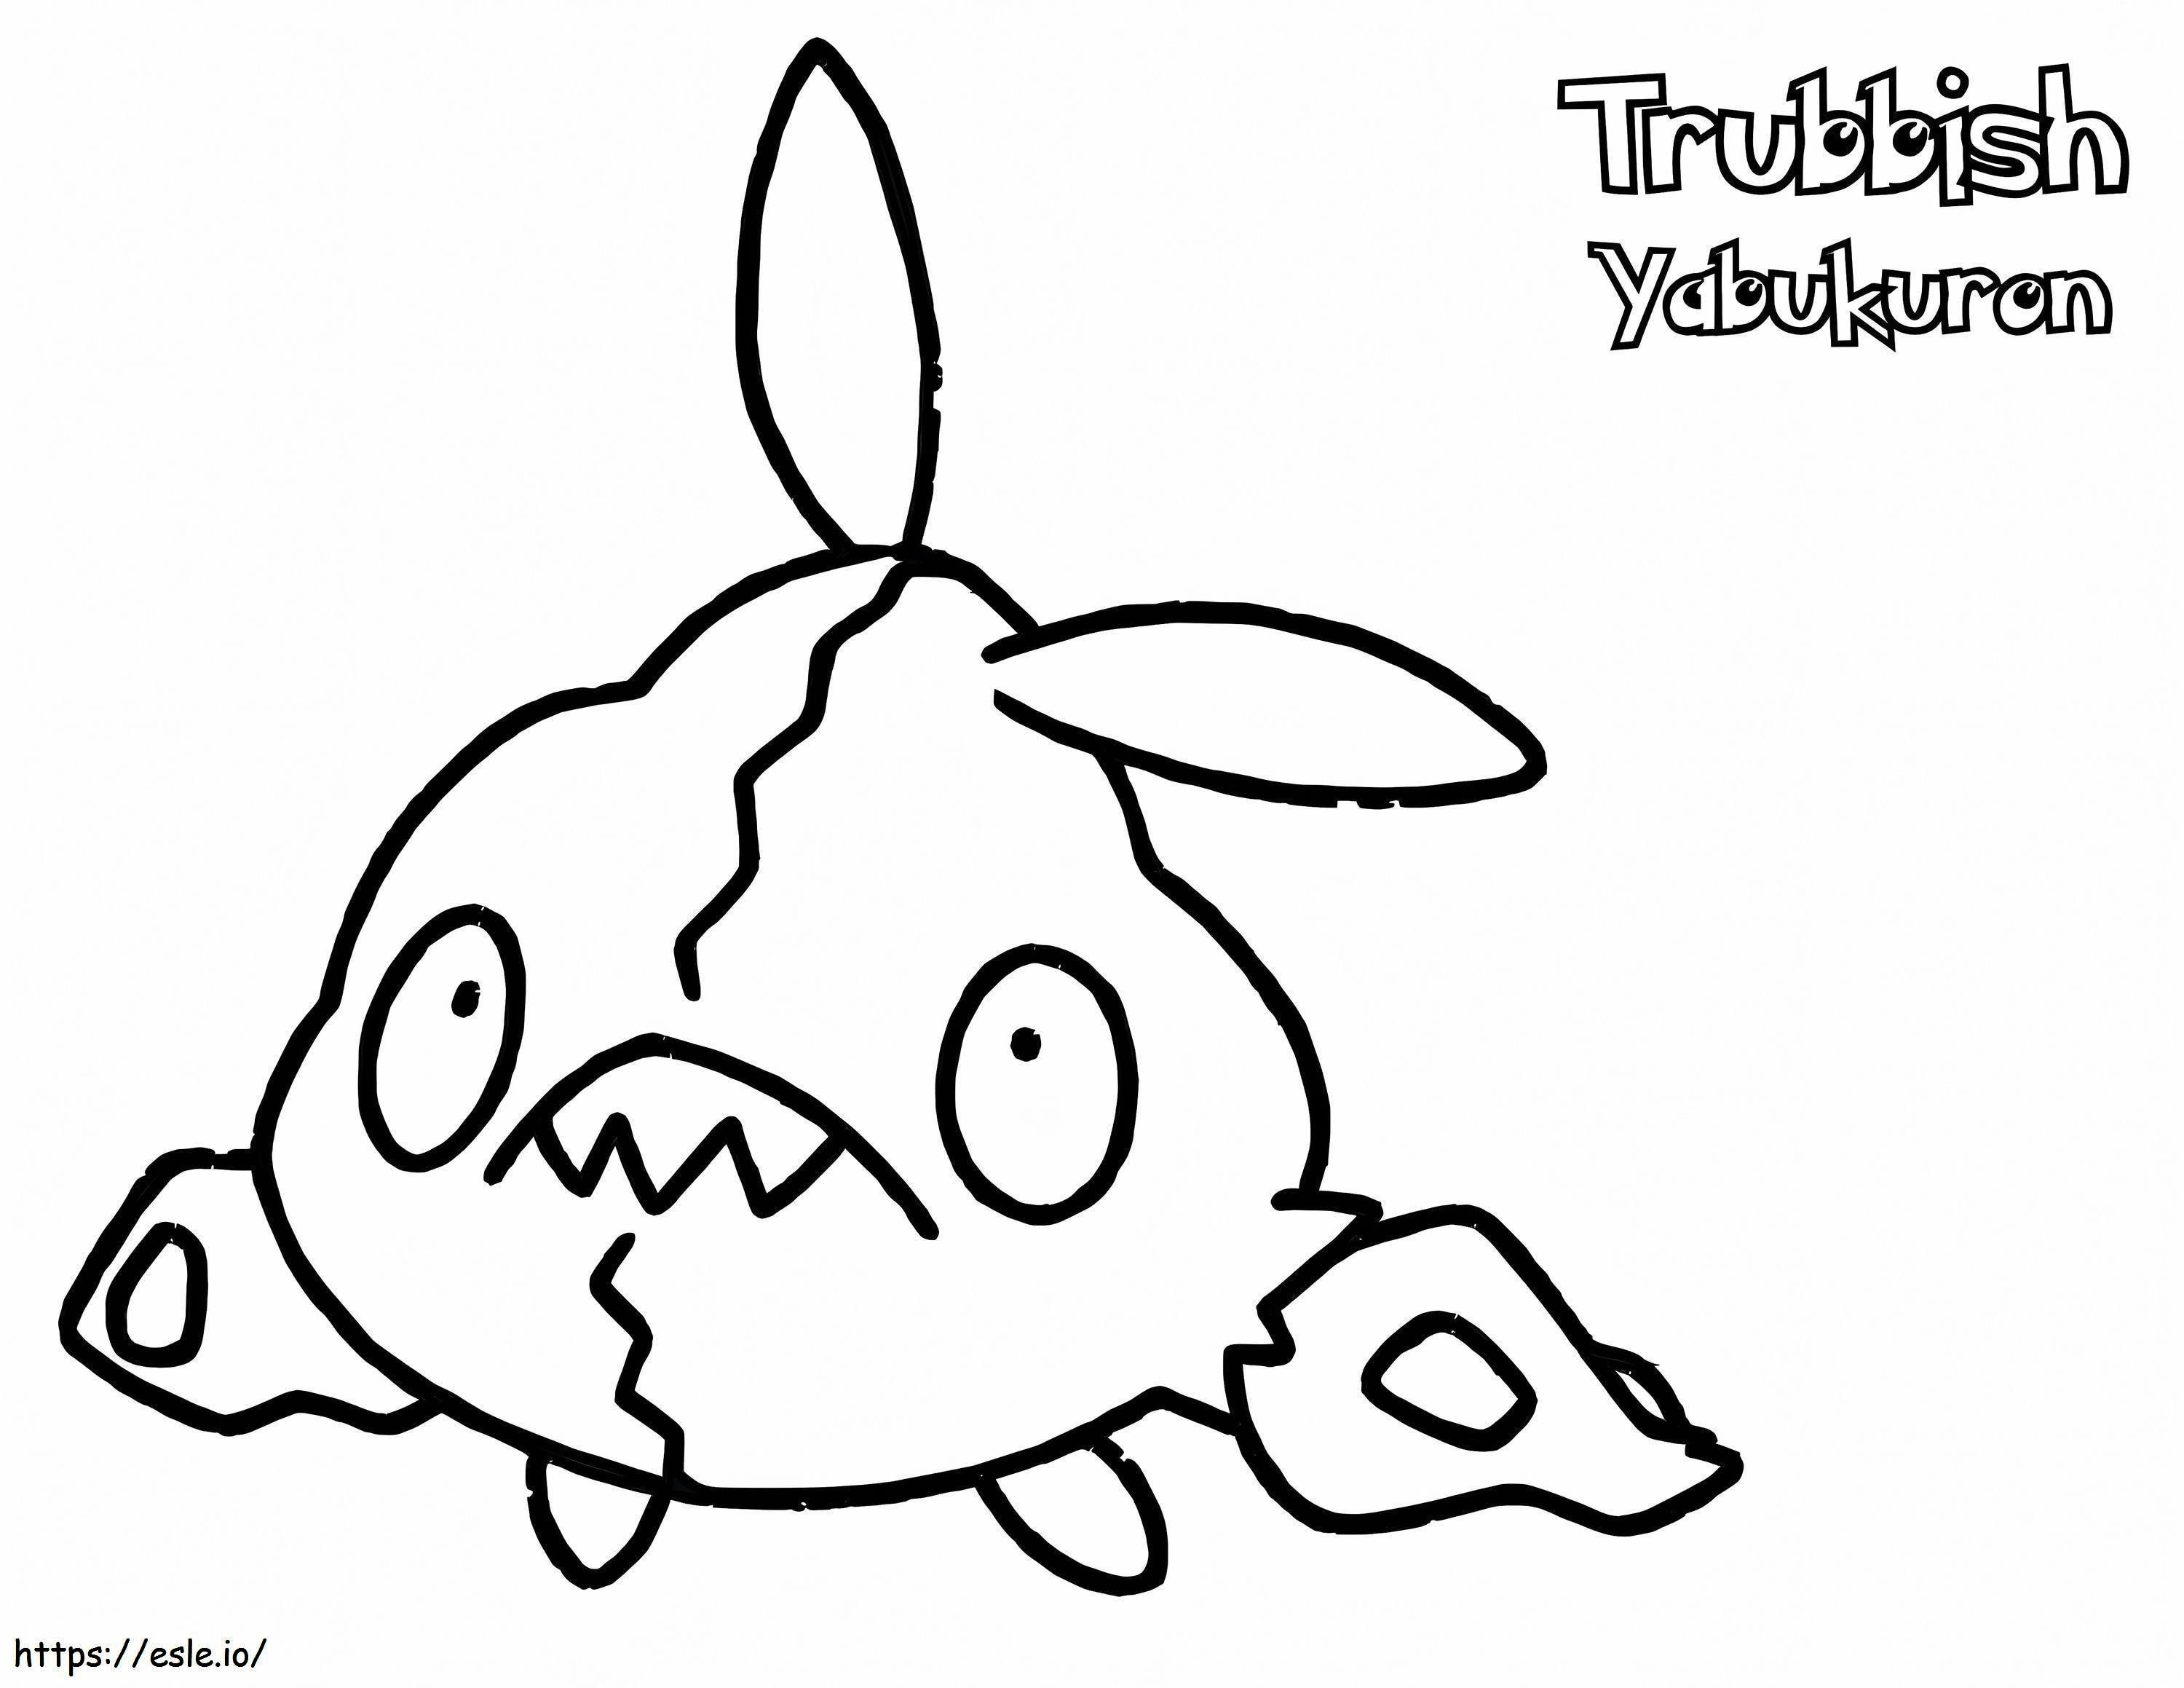 Trubbish Gen 5 Pokémon ausmalbilder